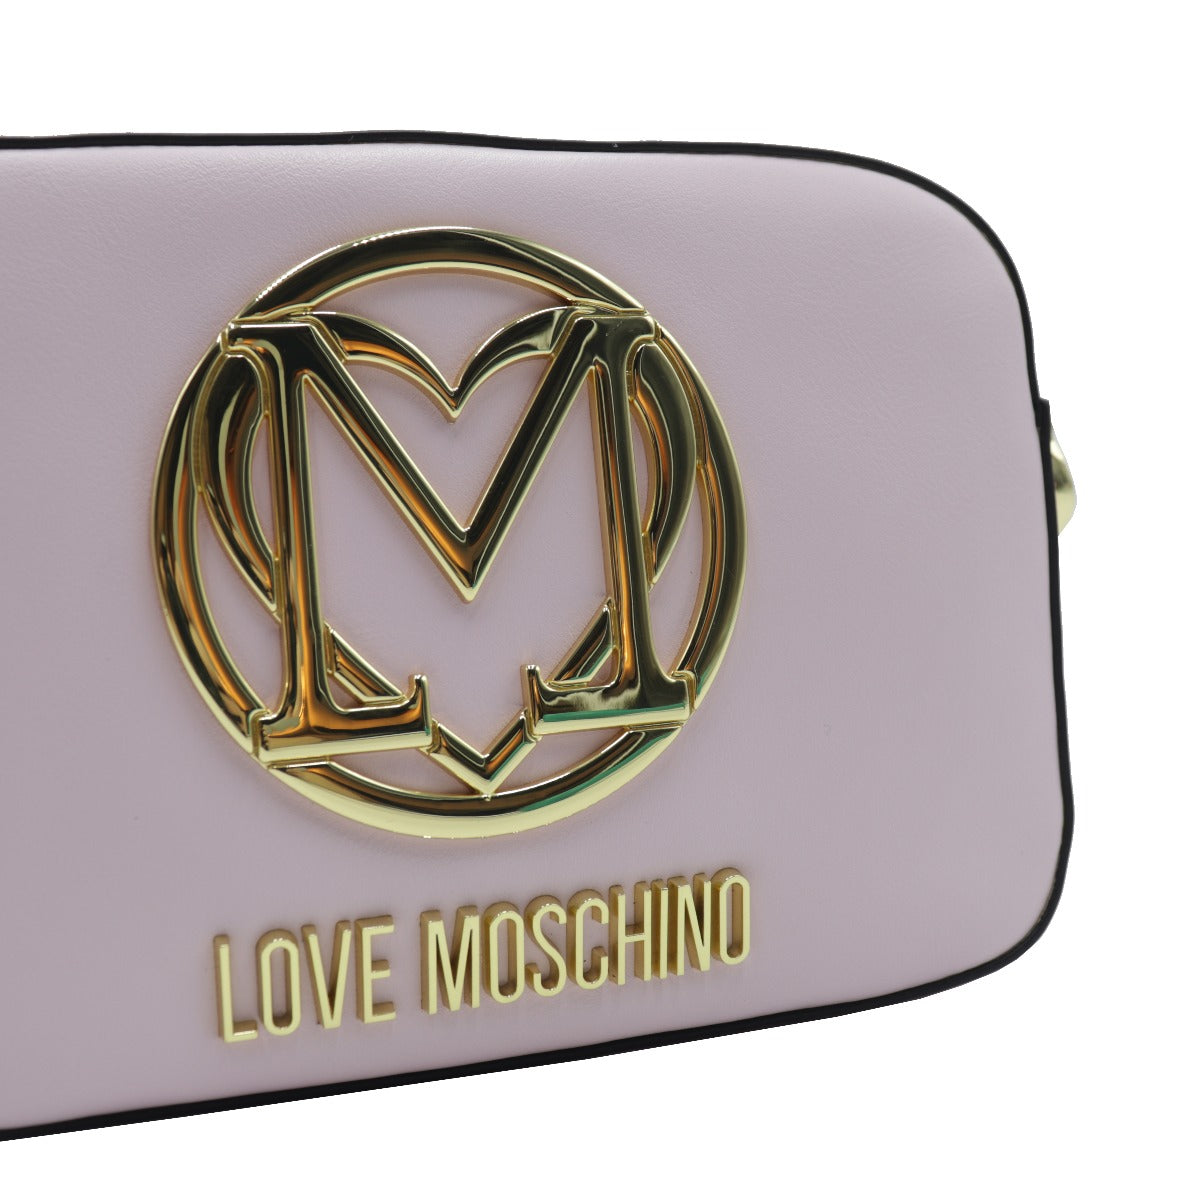 Love Moschino Borsa a Tracolla Camera con Logo in Oro Rosa Cipria